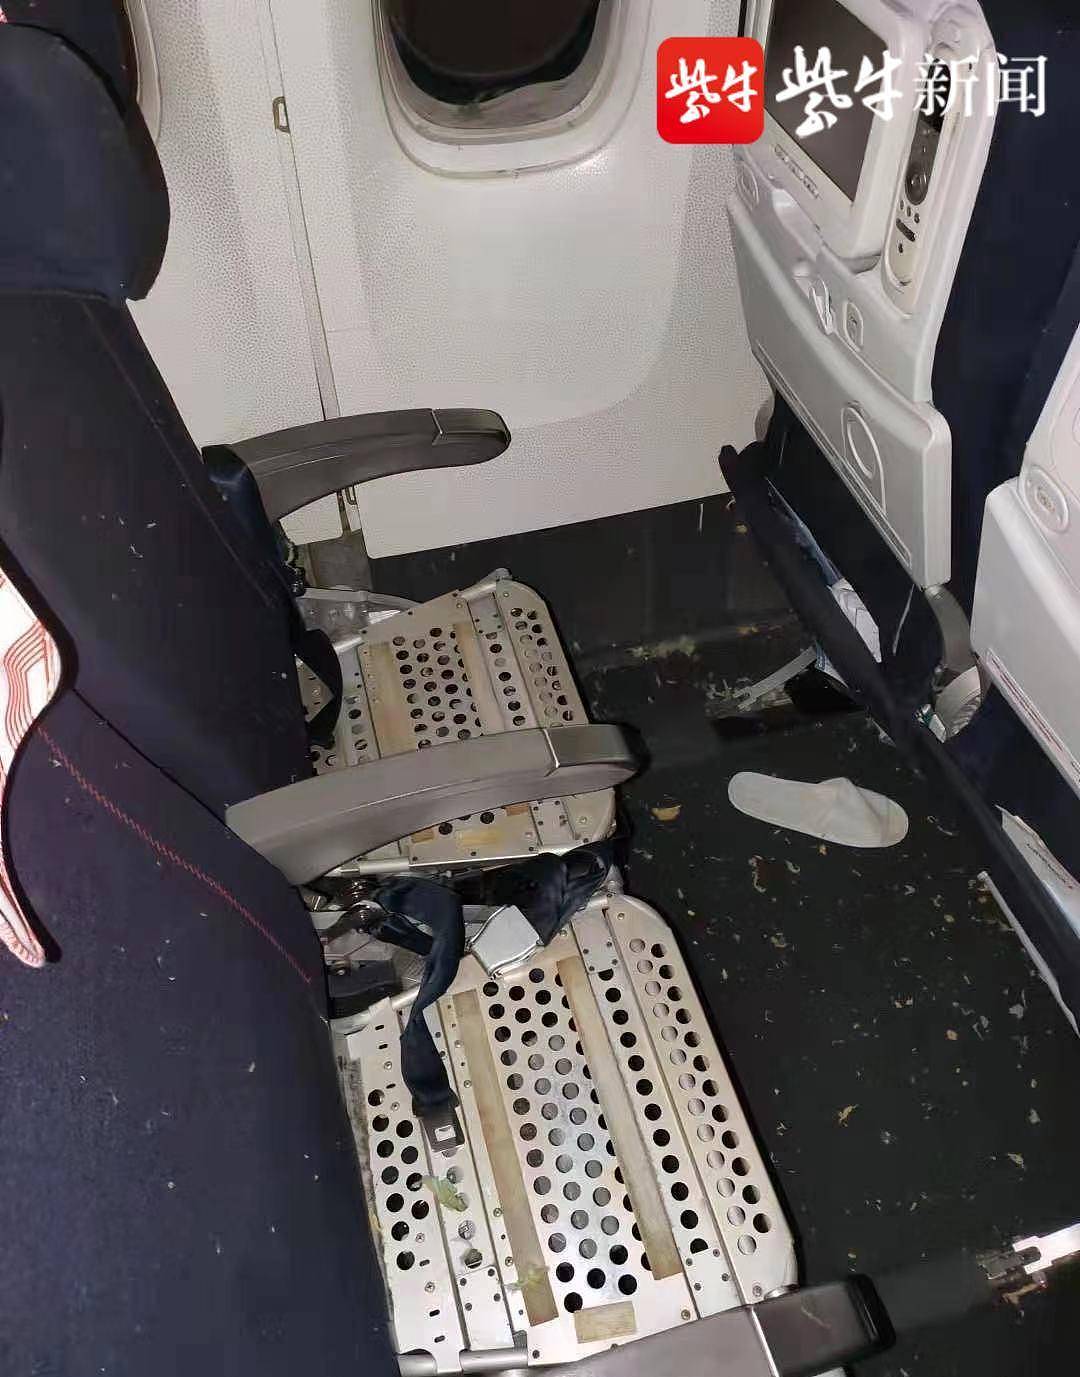 法航北京至巴黎航班起飞后遇险返航 后舱发出巨响有乘客闻到糊味